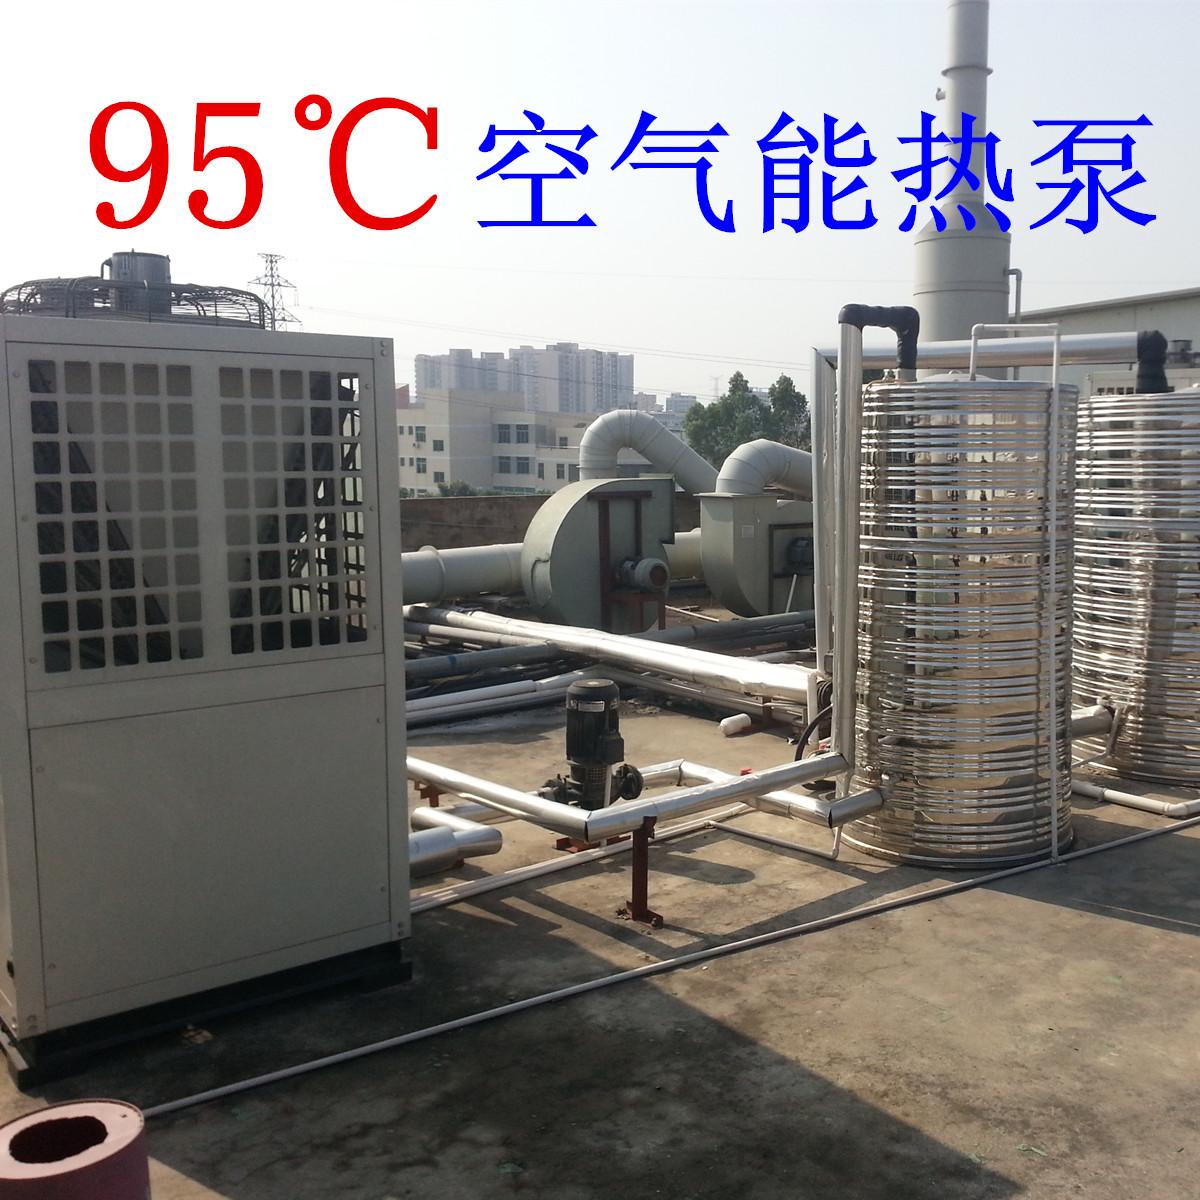 95度空气能热泵 空气源热泵 热水机